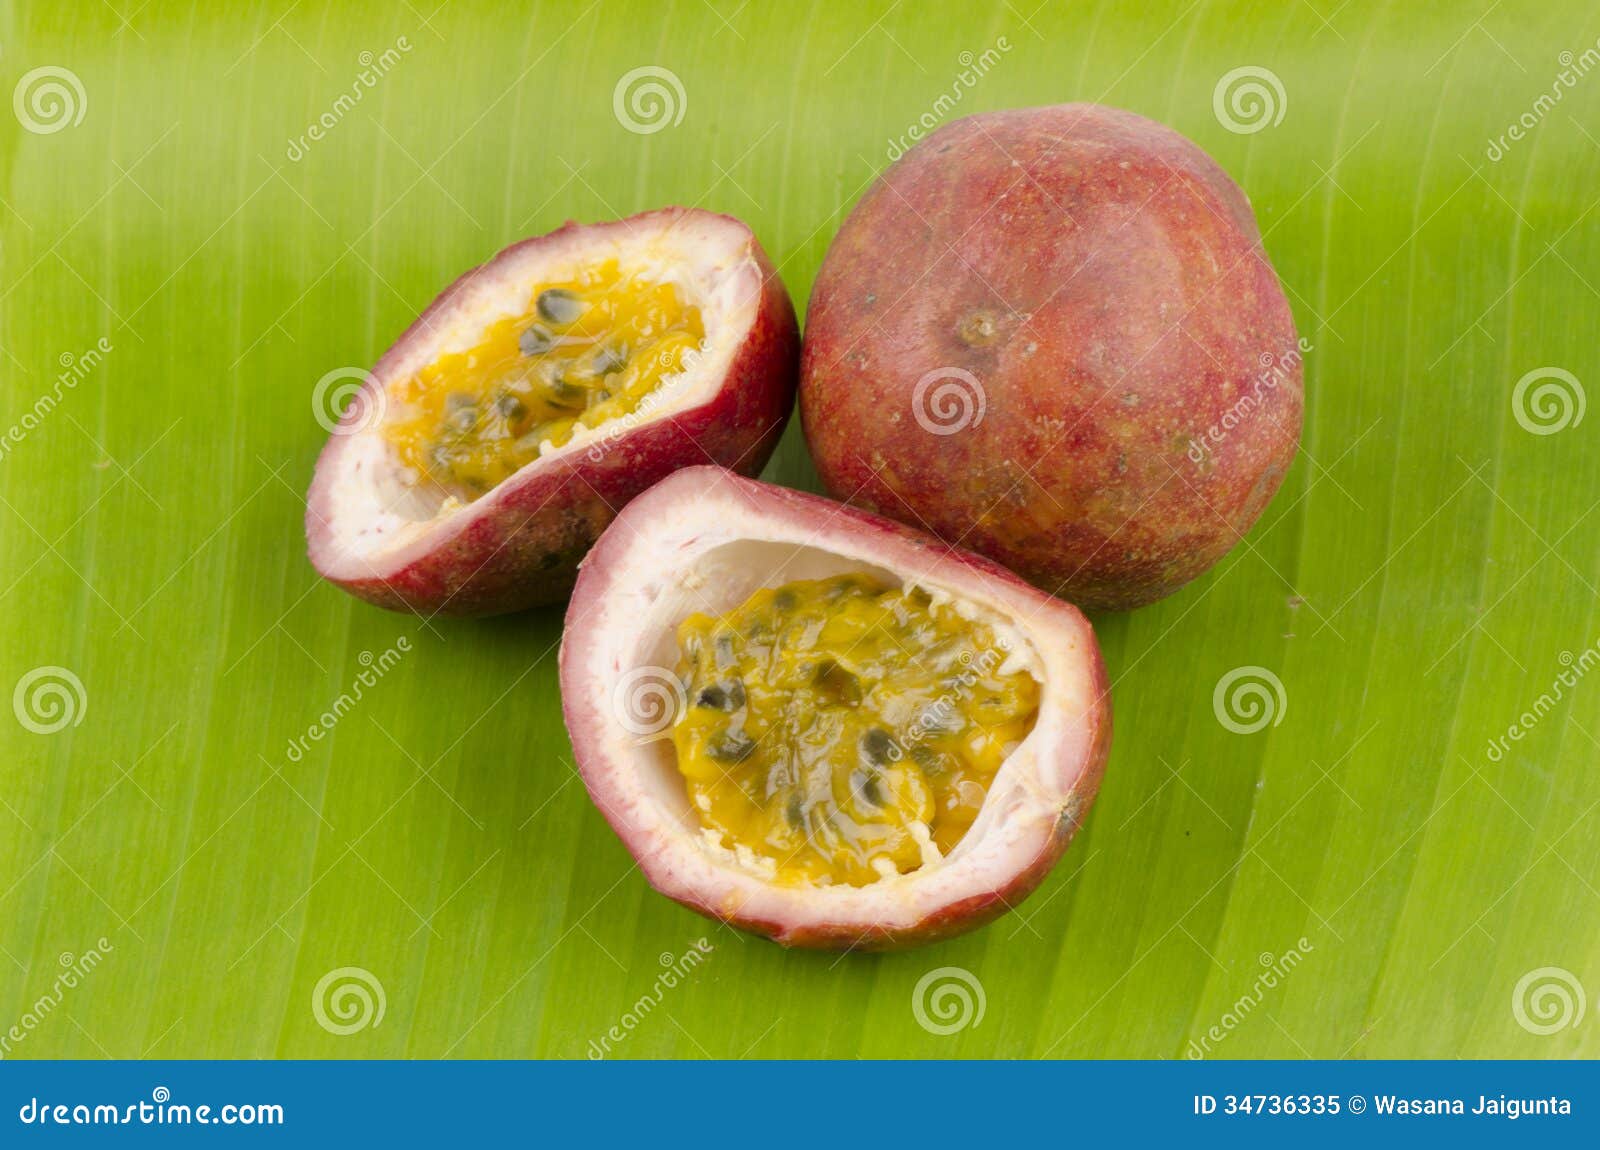 passionfruit (passiflora edulis)